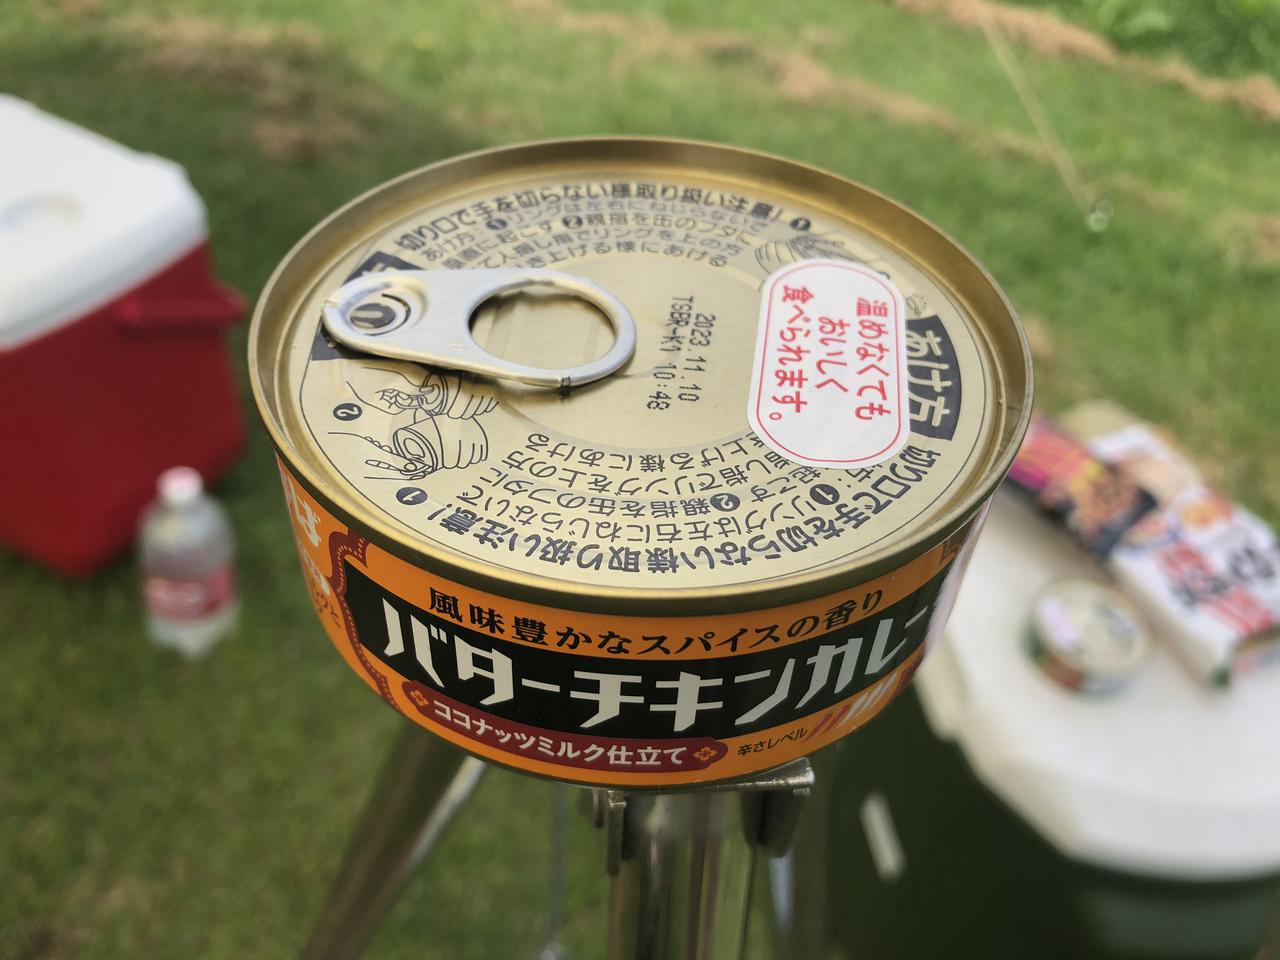 いなばの 缶詰カレー がすごい お手軽 種類豊富でキャンプ飯が楽しくなる お役立ちキャンプ情報 21年06月17日 日本気象協会 Tenki Jp